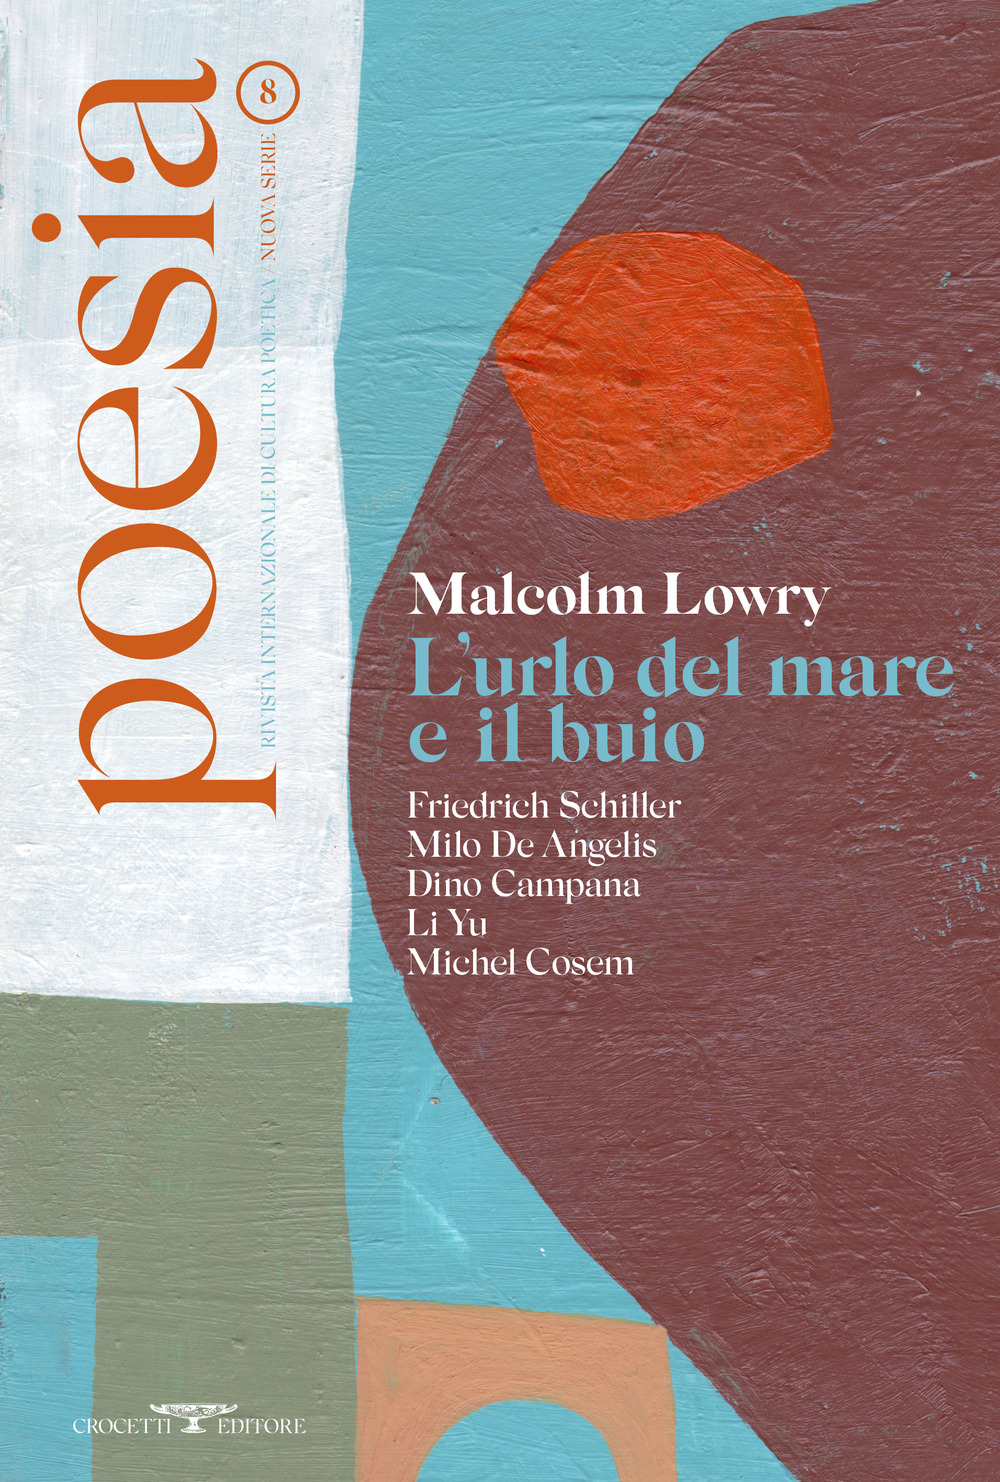 Poesia. Rivista internazionale di cultura poetica. Nuova serie. Vol. 8: Malcolm Lowry. L'urlo del mare e il buio